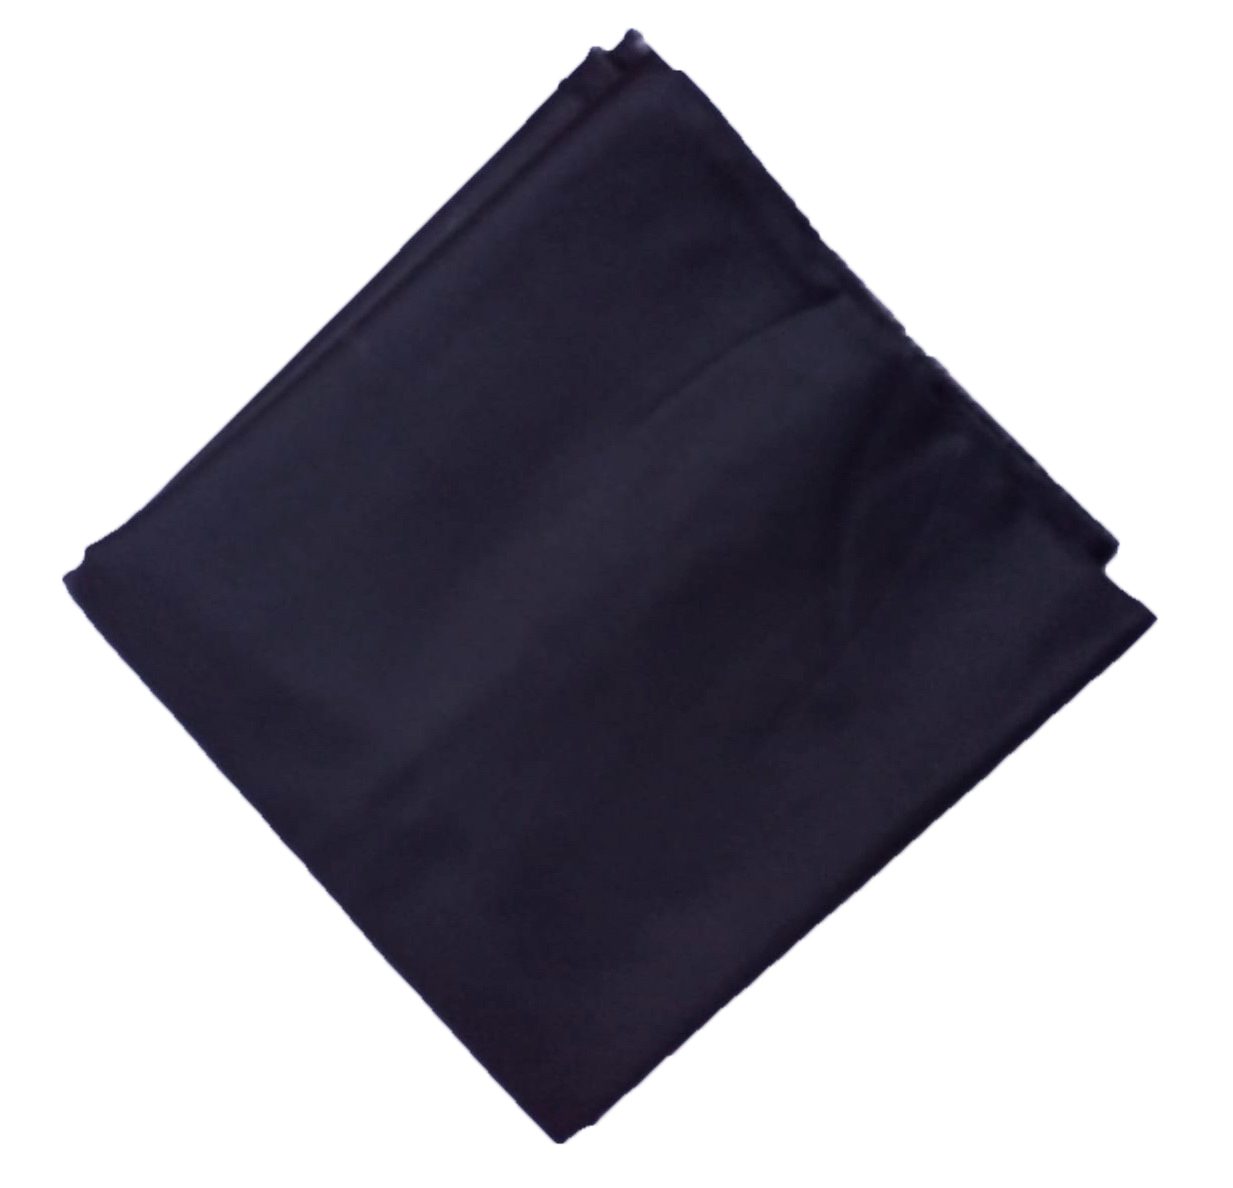 Black Makhani Cotton Dress Material for Salwar Kameez CJ050